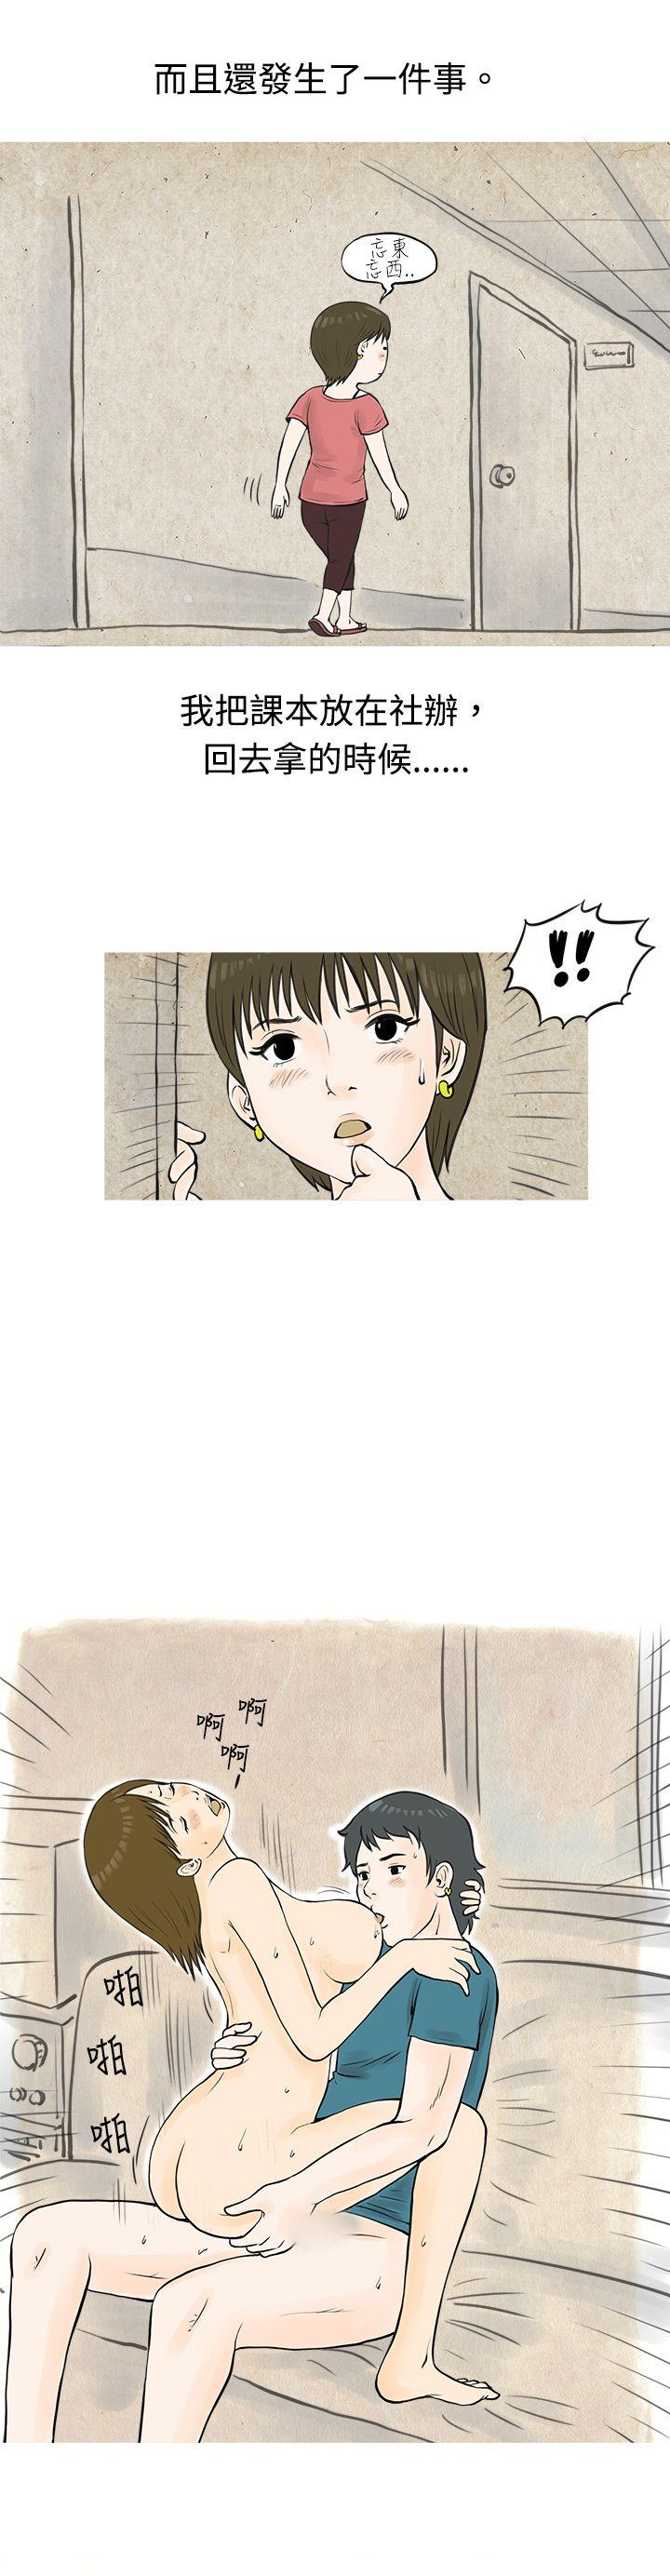 韩国污漫画 秘密Story 发生在热音社的小故事(上) 3